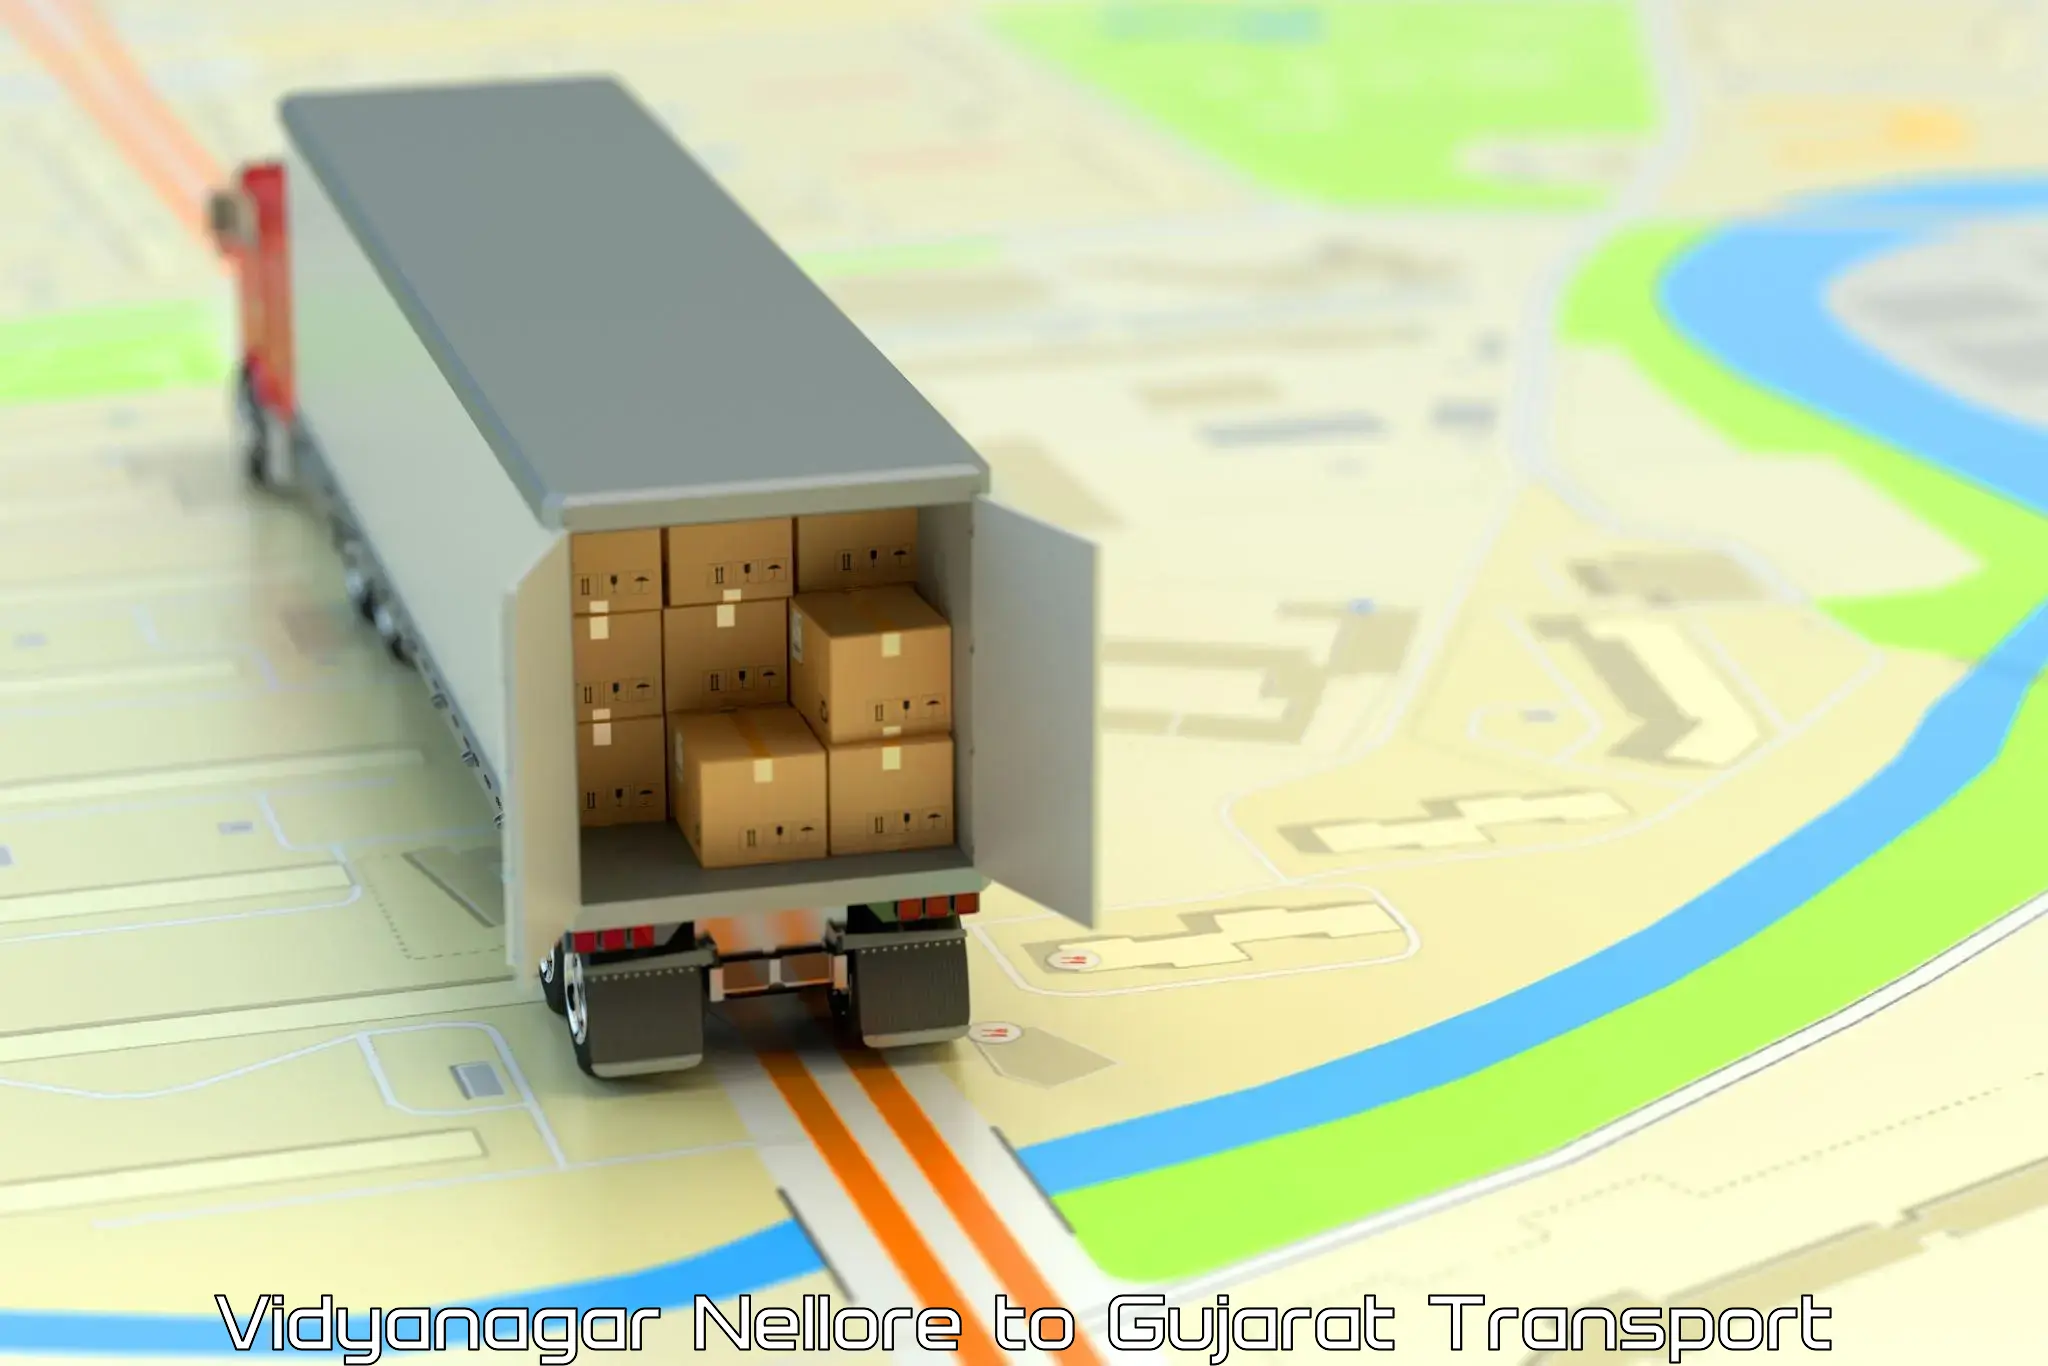 Container transport service Vidyanagar Nellore to Radhanpur